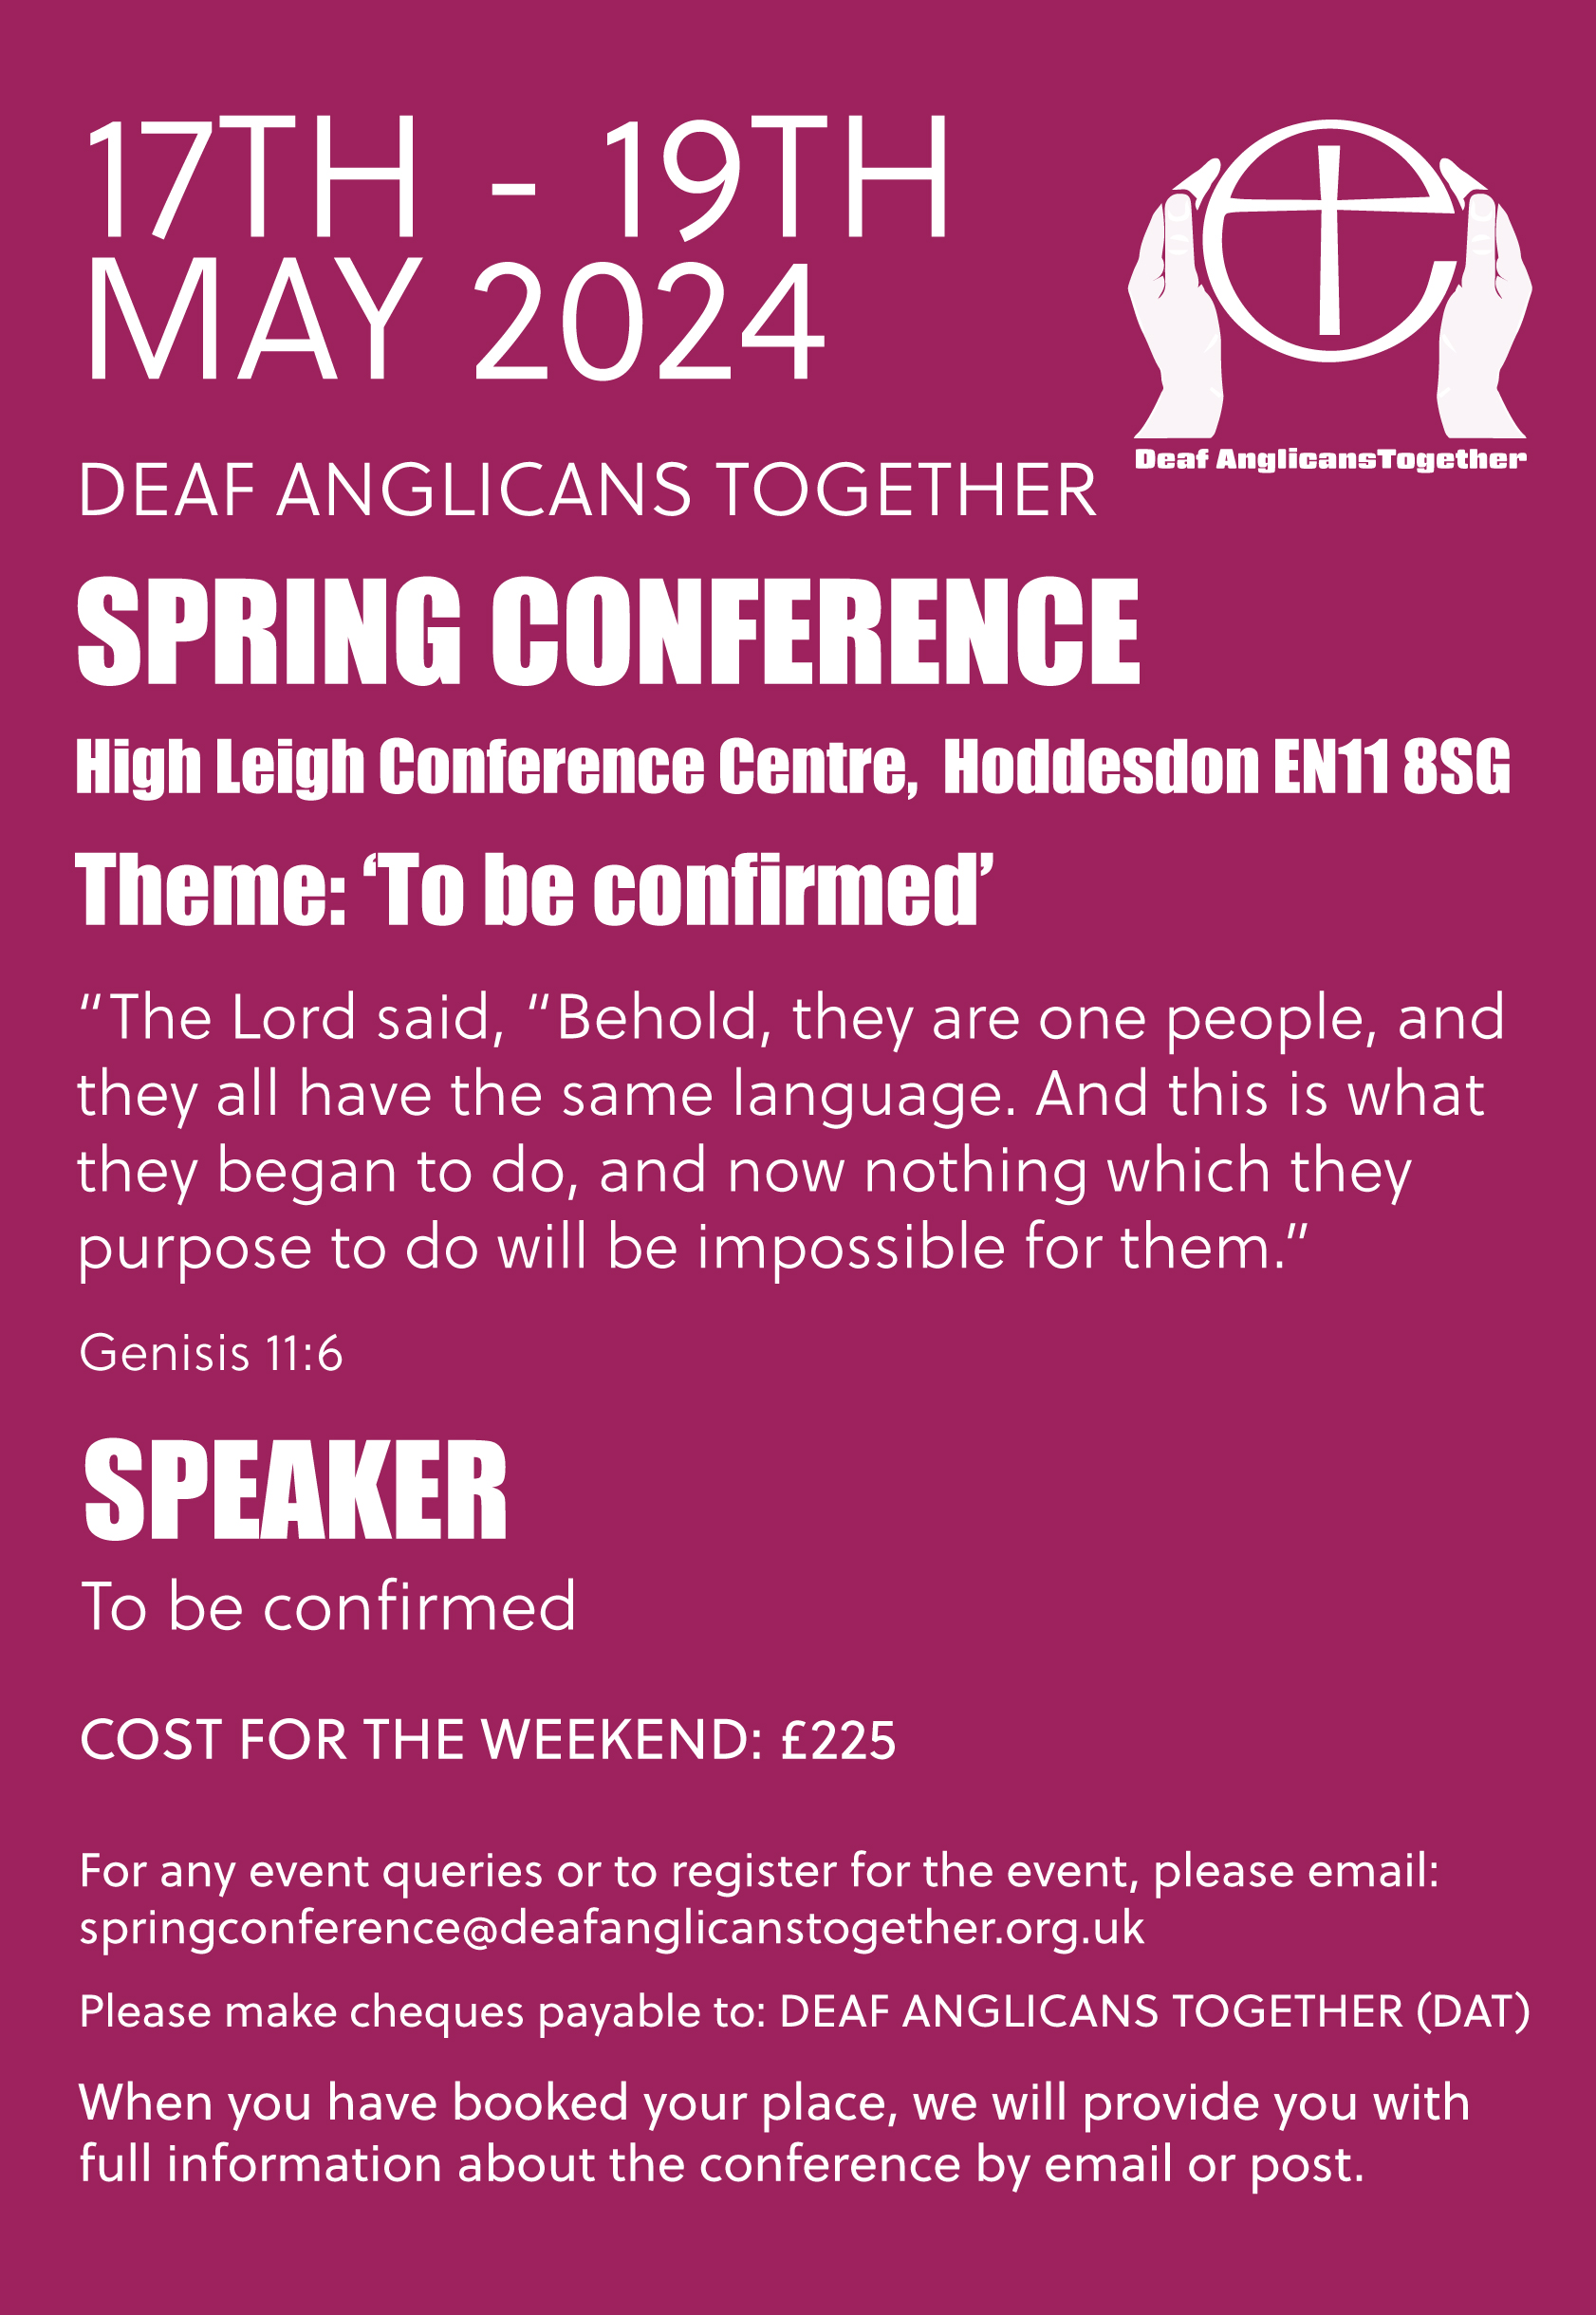 Spring Conference Deaf Anglicans Together